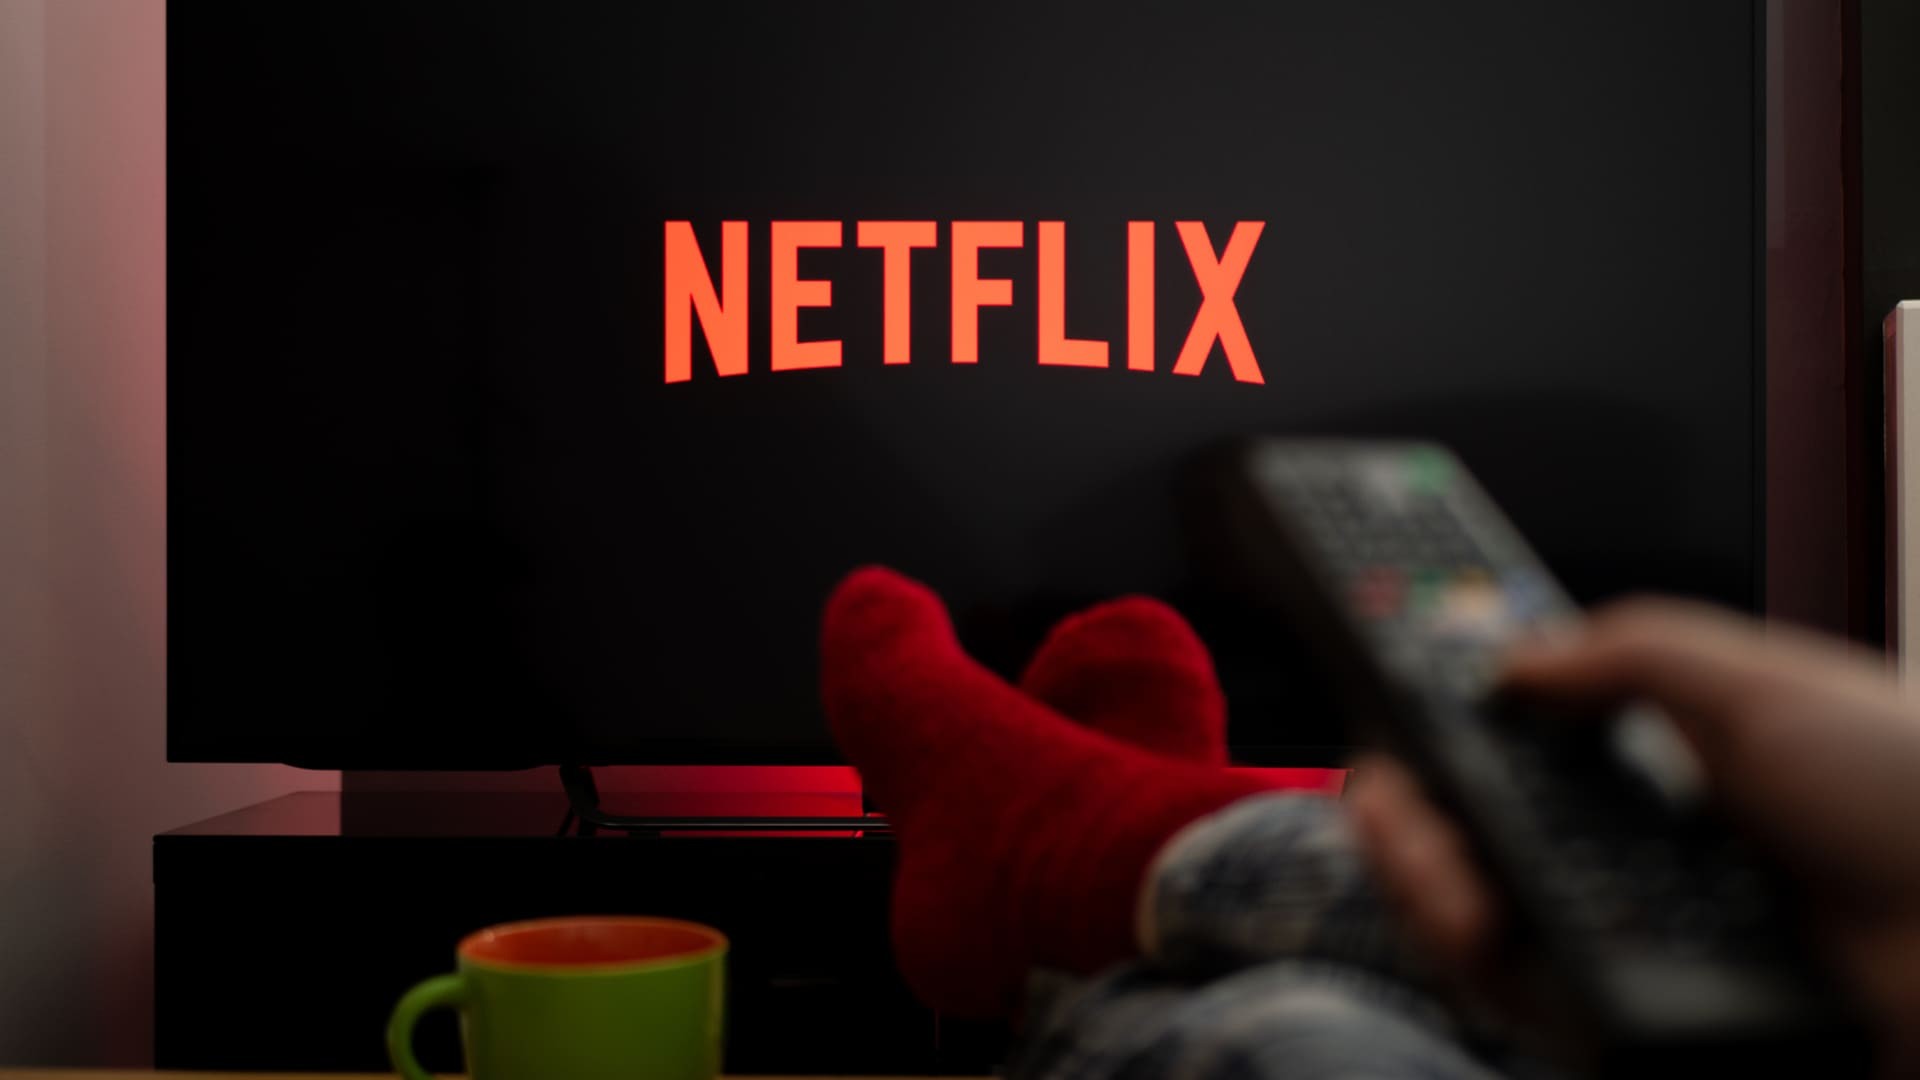 Baixe GTA III, San Andreas e Vice City de graça! Netflix libera